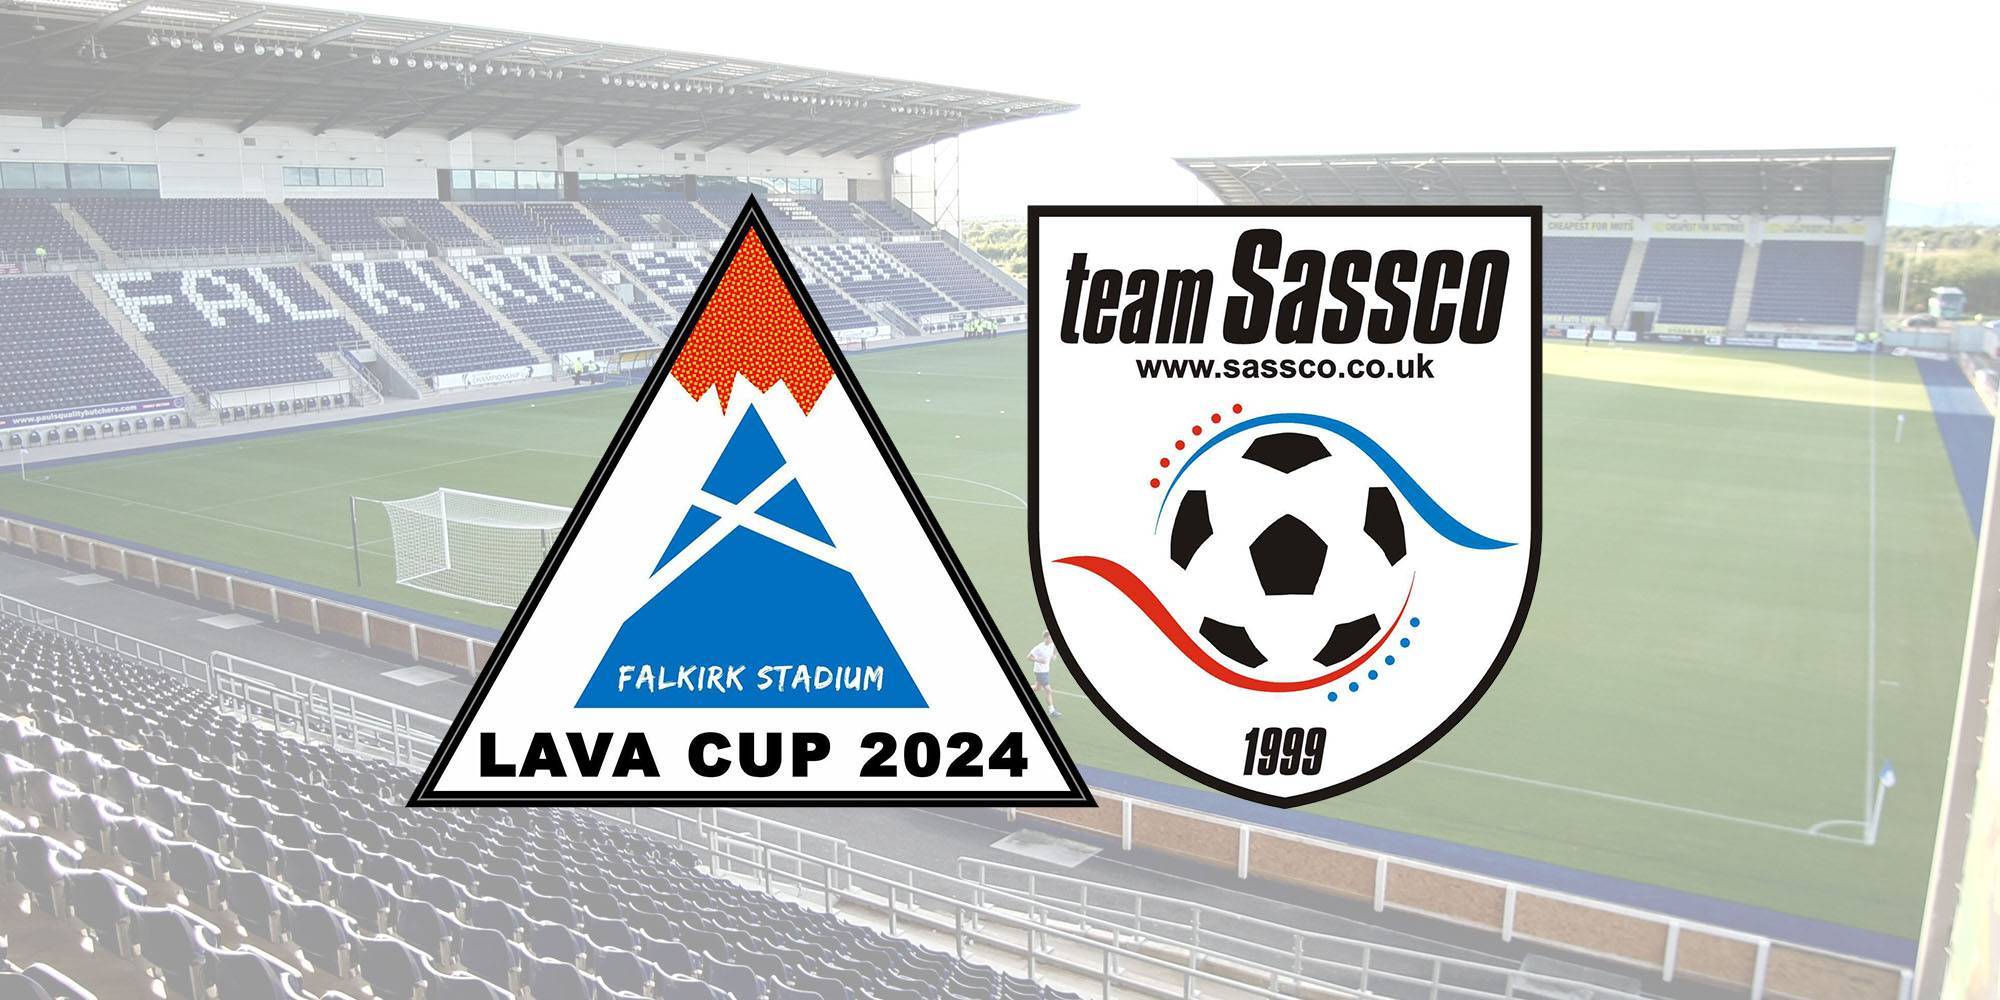 Sassco 7-a-side in Falkirk in 2024.